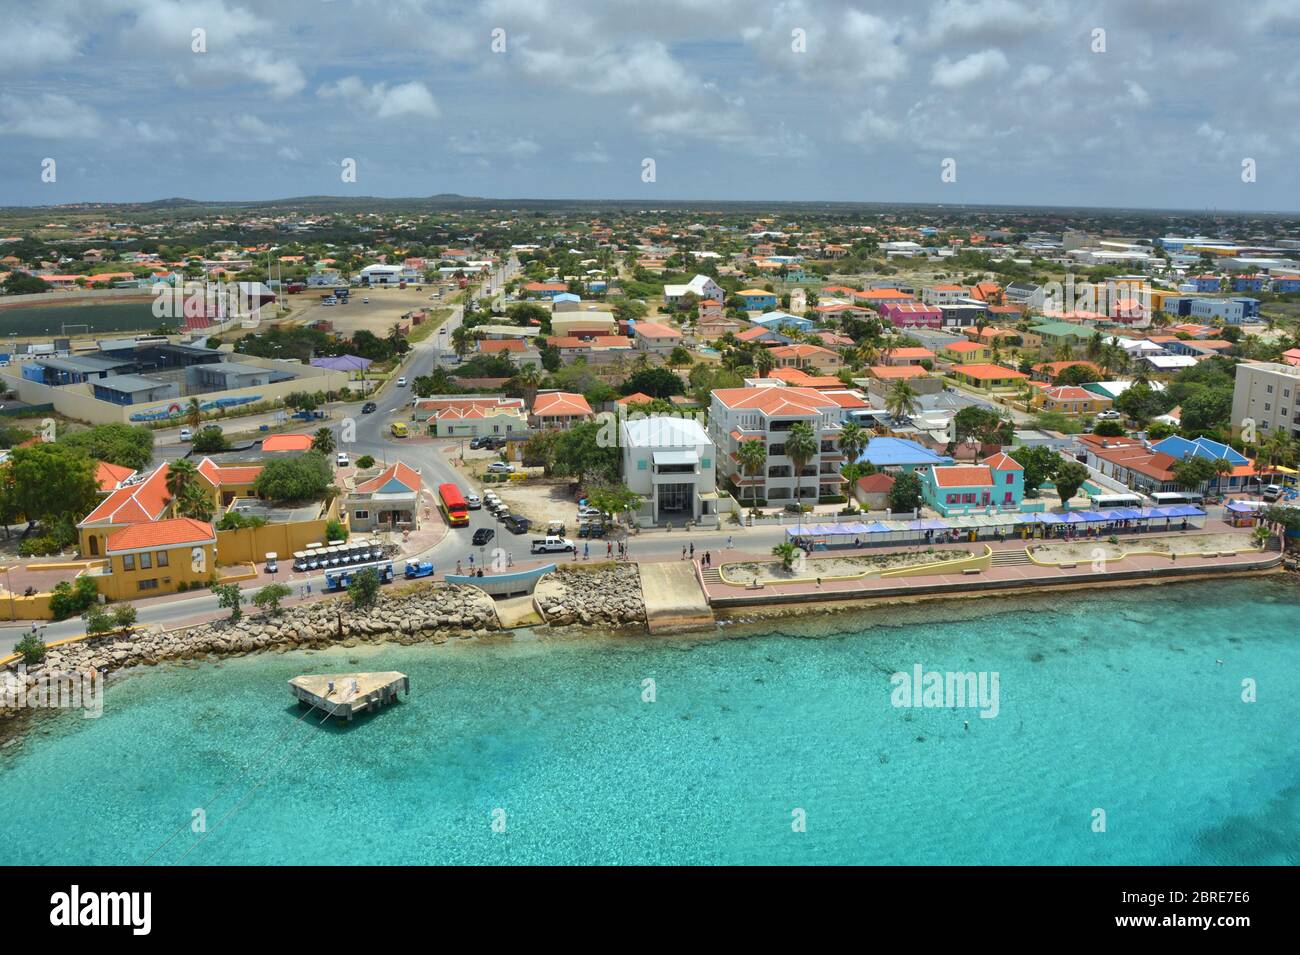 Puerto de cruceros en Kralendijk, capital de Bonaire, isla del Caribe ABC  países Bajos Fotografía de stock - Alamy